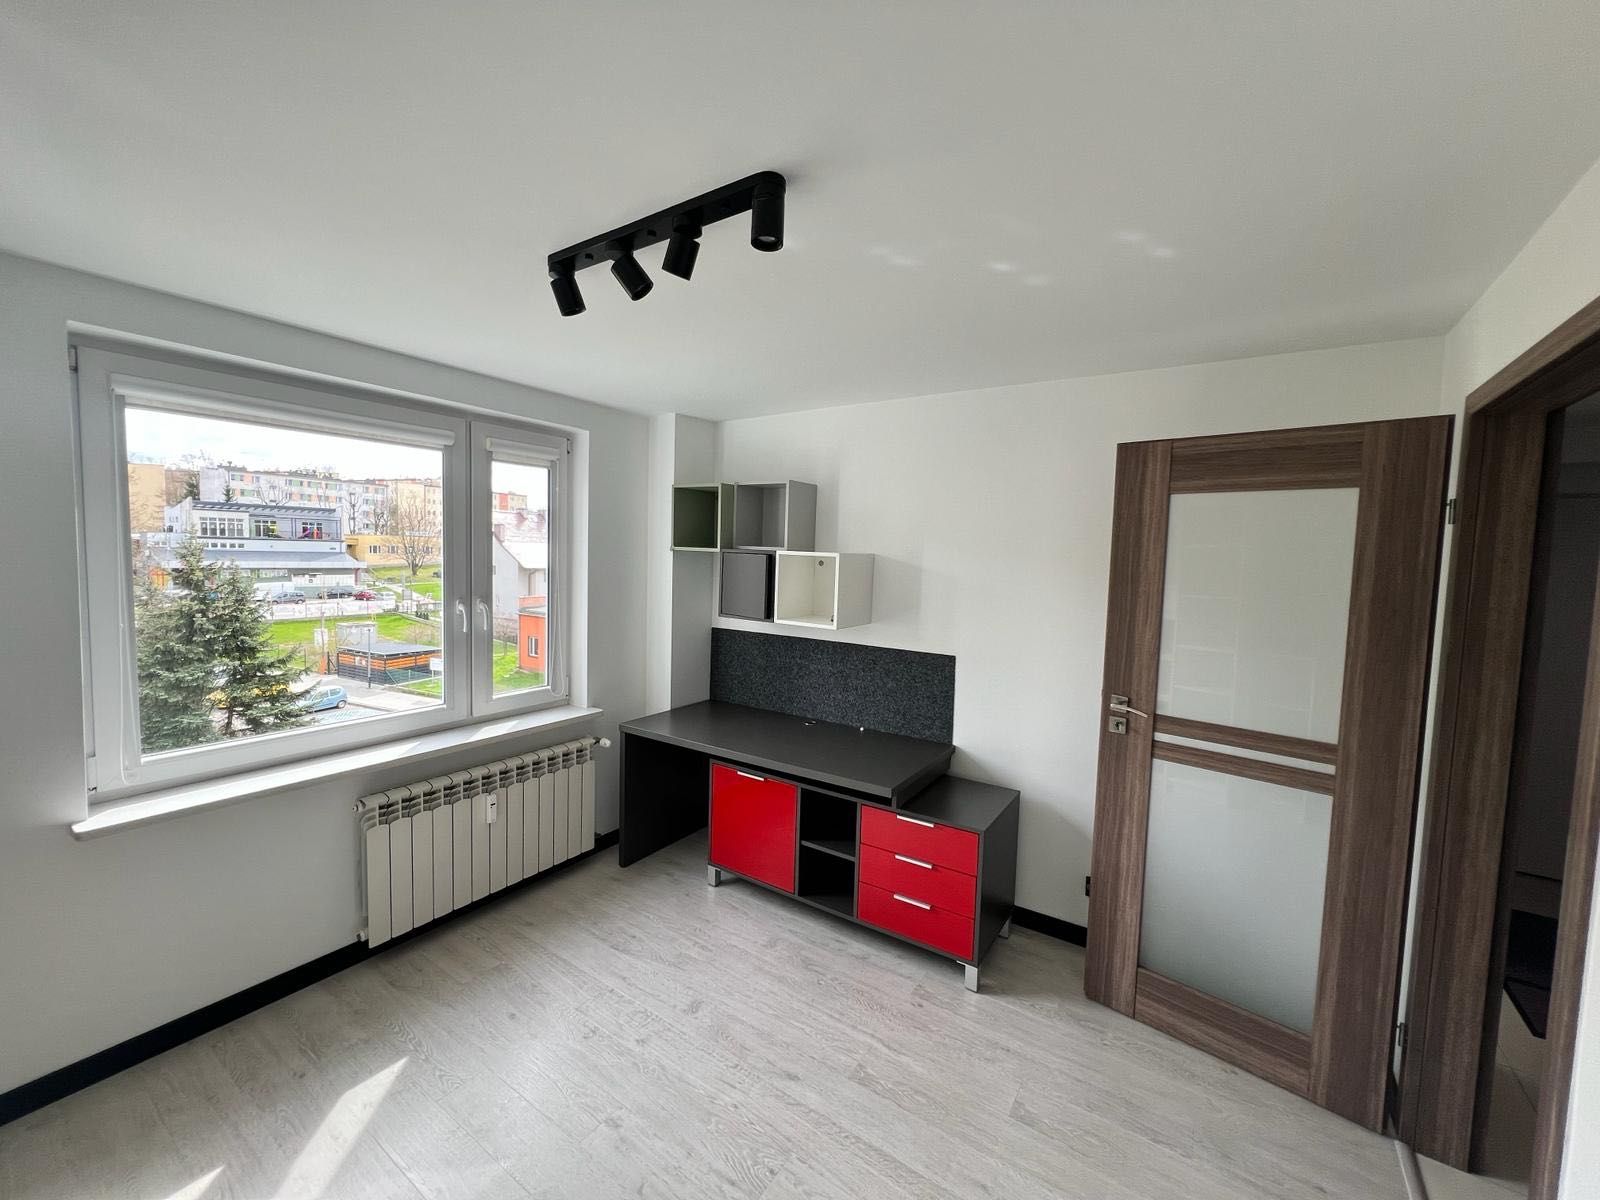 70 m2 Najlepsza lokalizacja w Skawinie, mieszkanie na wynajem